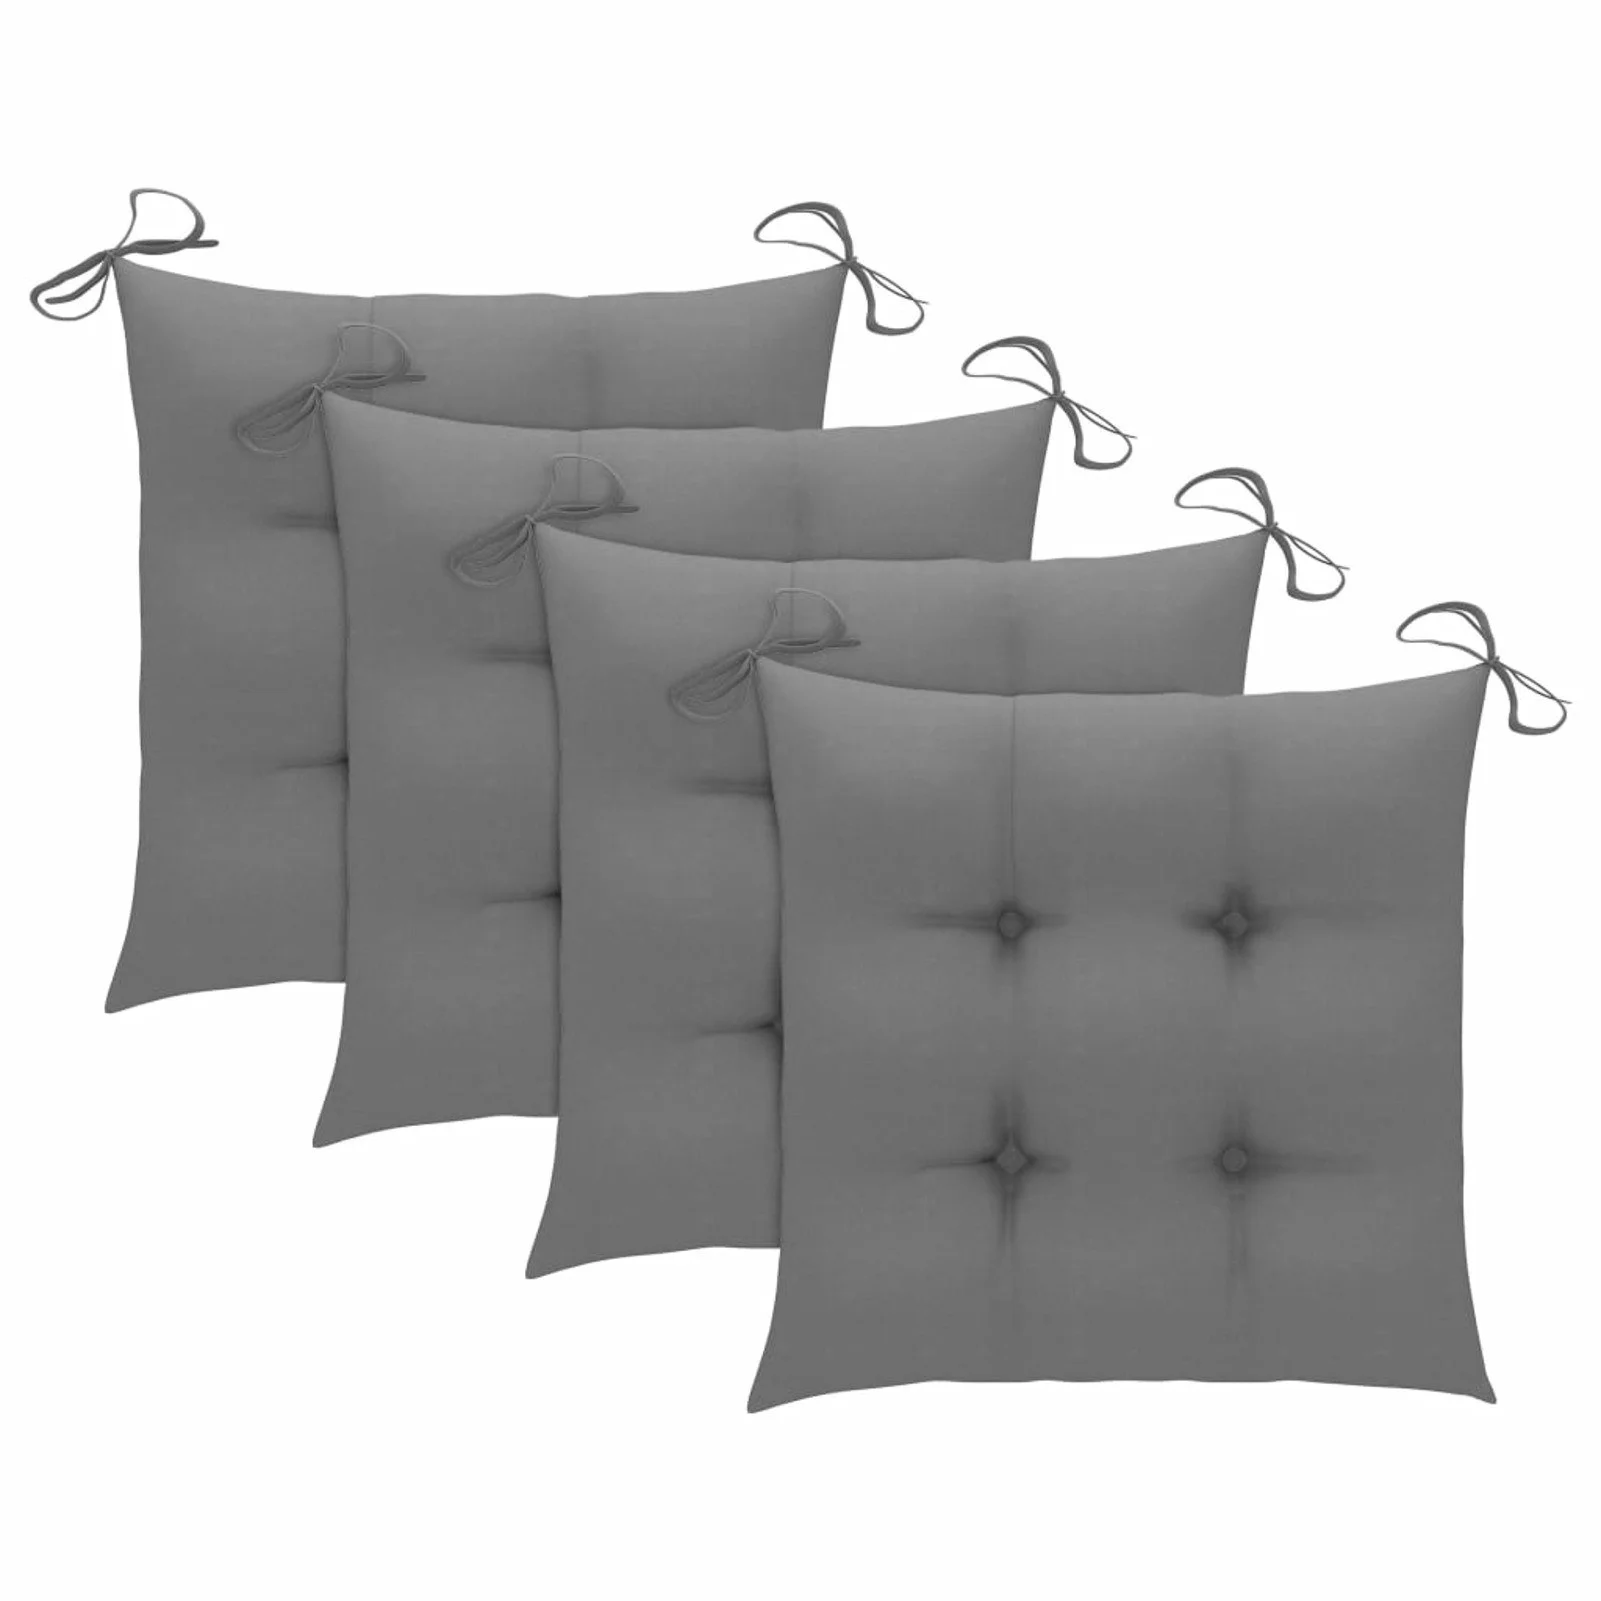 

Chair Cushions 4 pcs Gray 15.7x15.7"x2.8" Fabric"